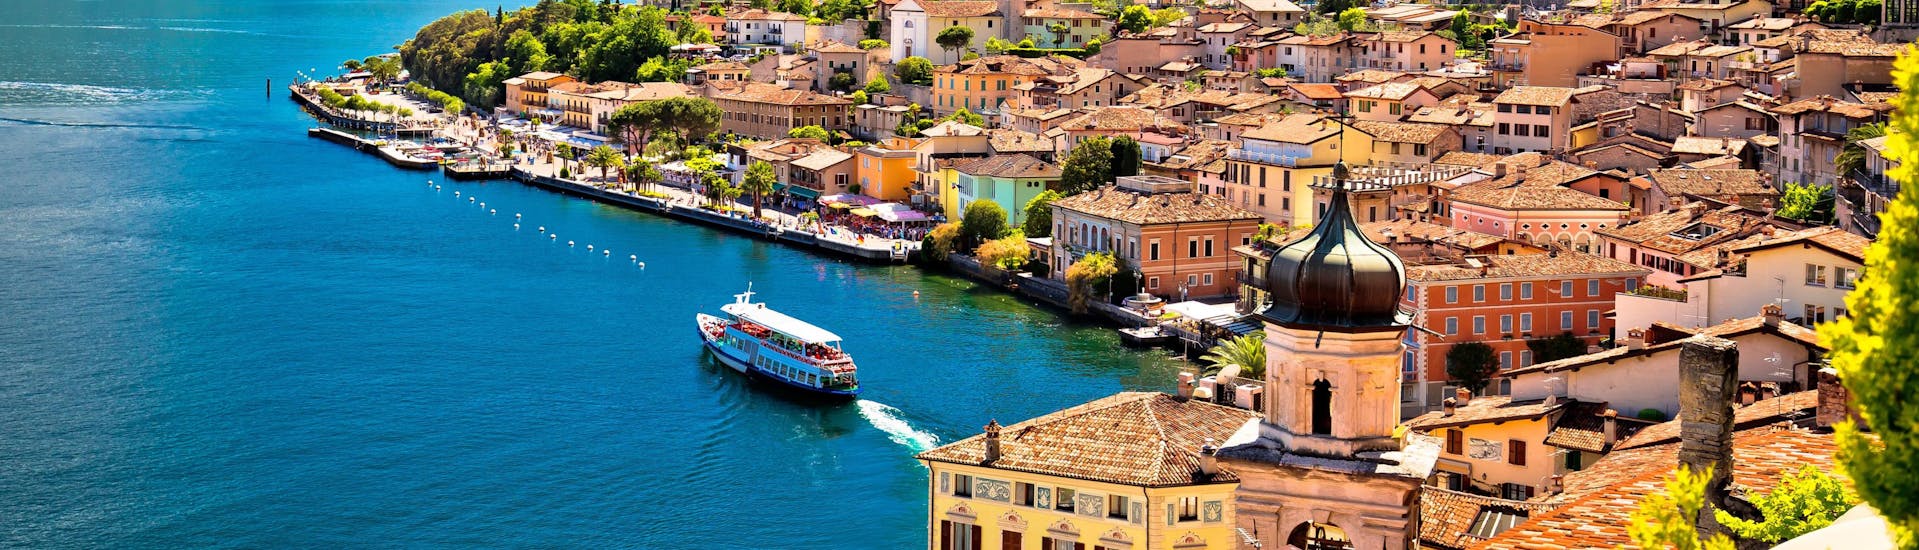 La ciudad de Limone sul Garda, en el lago de Garda (Italia).